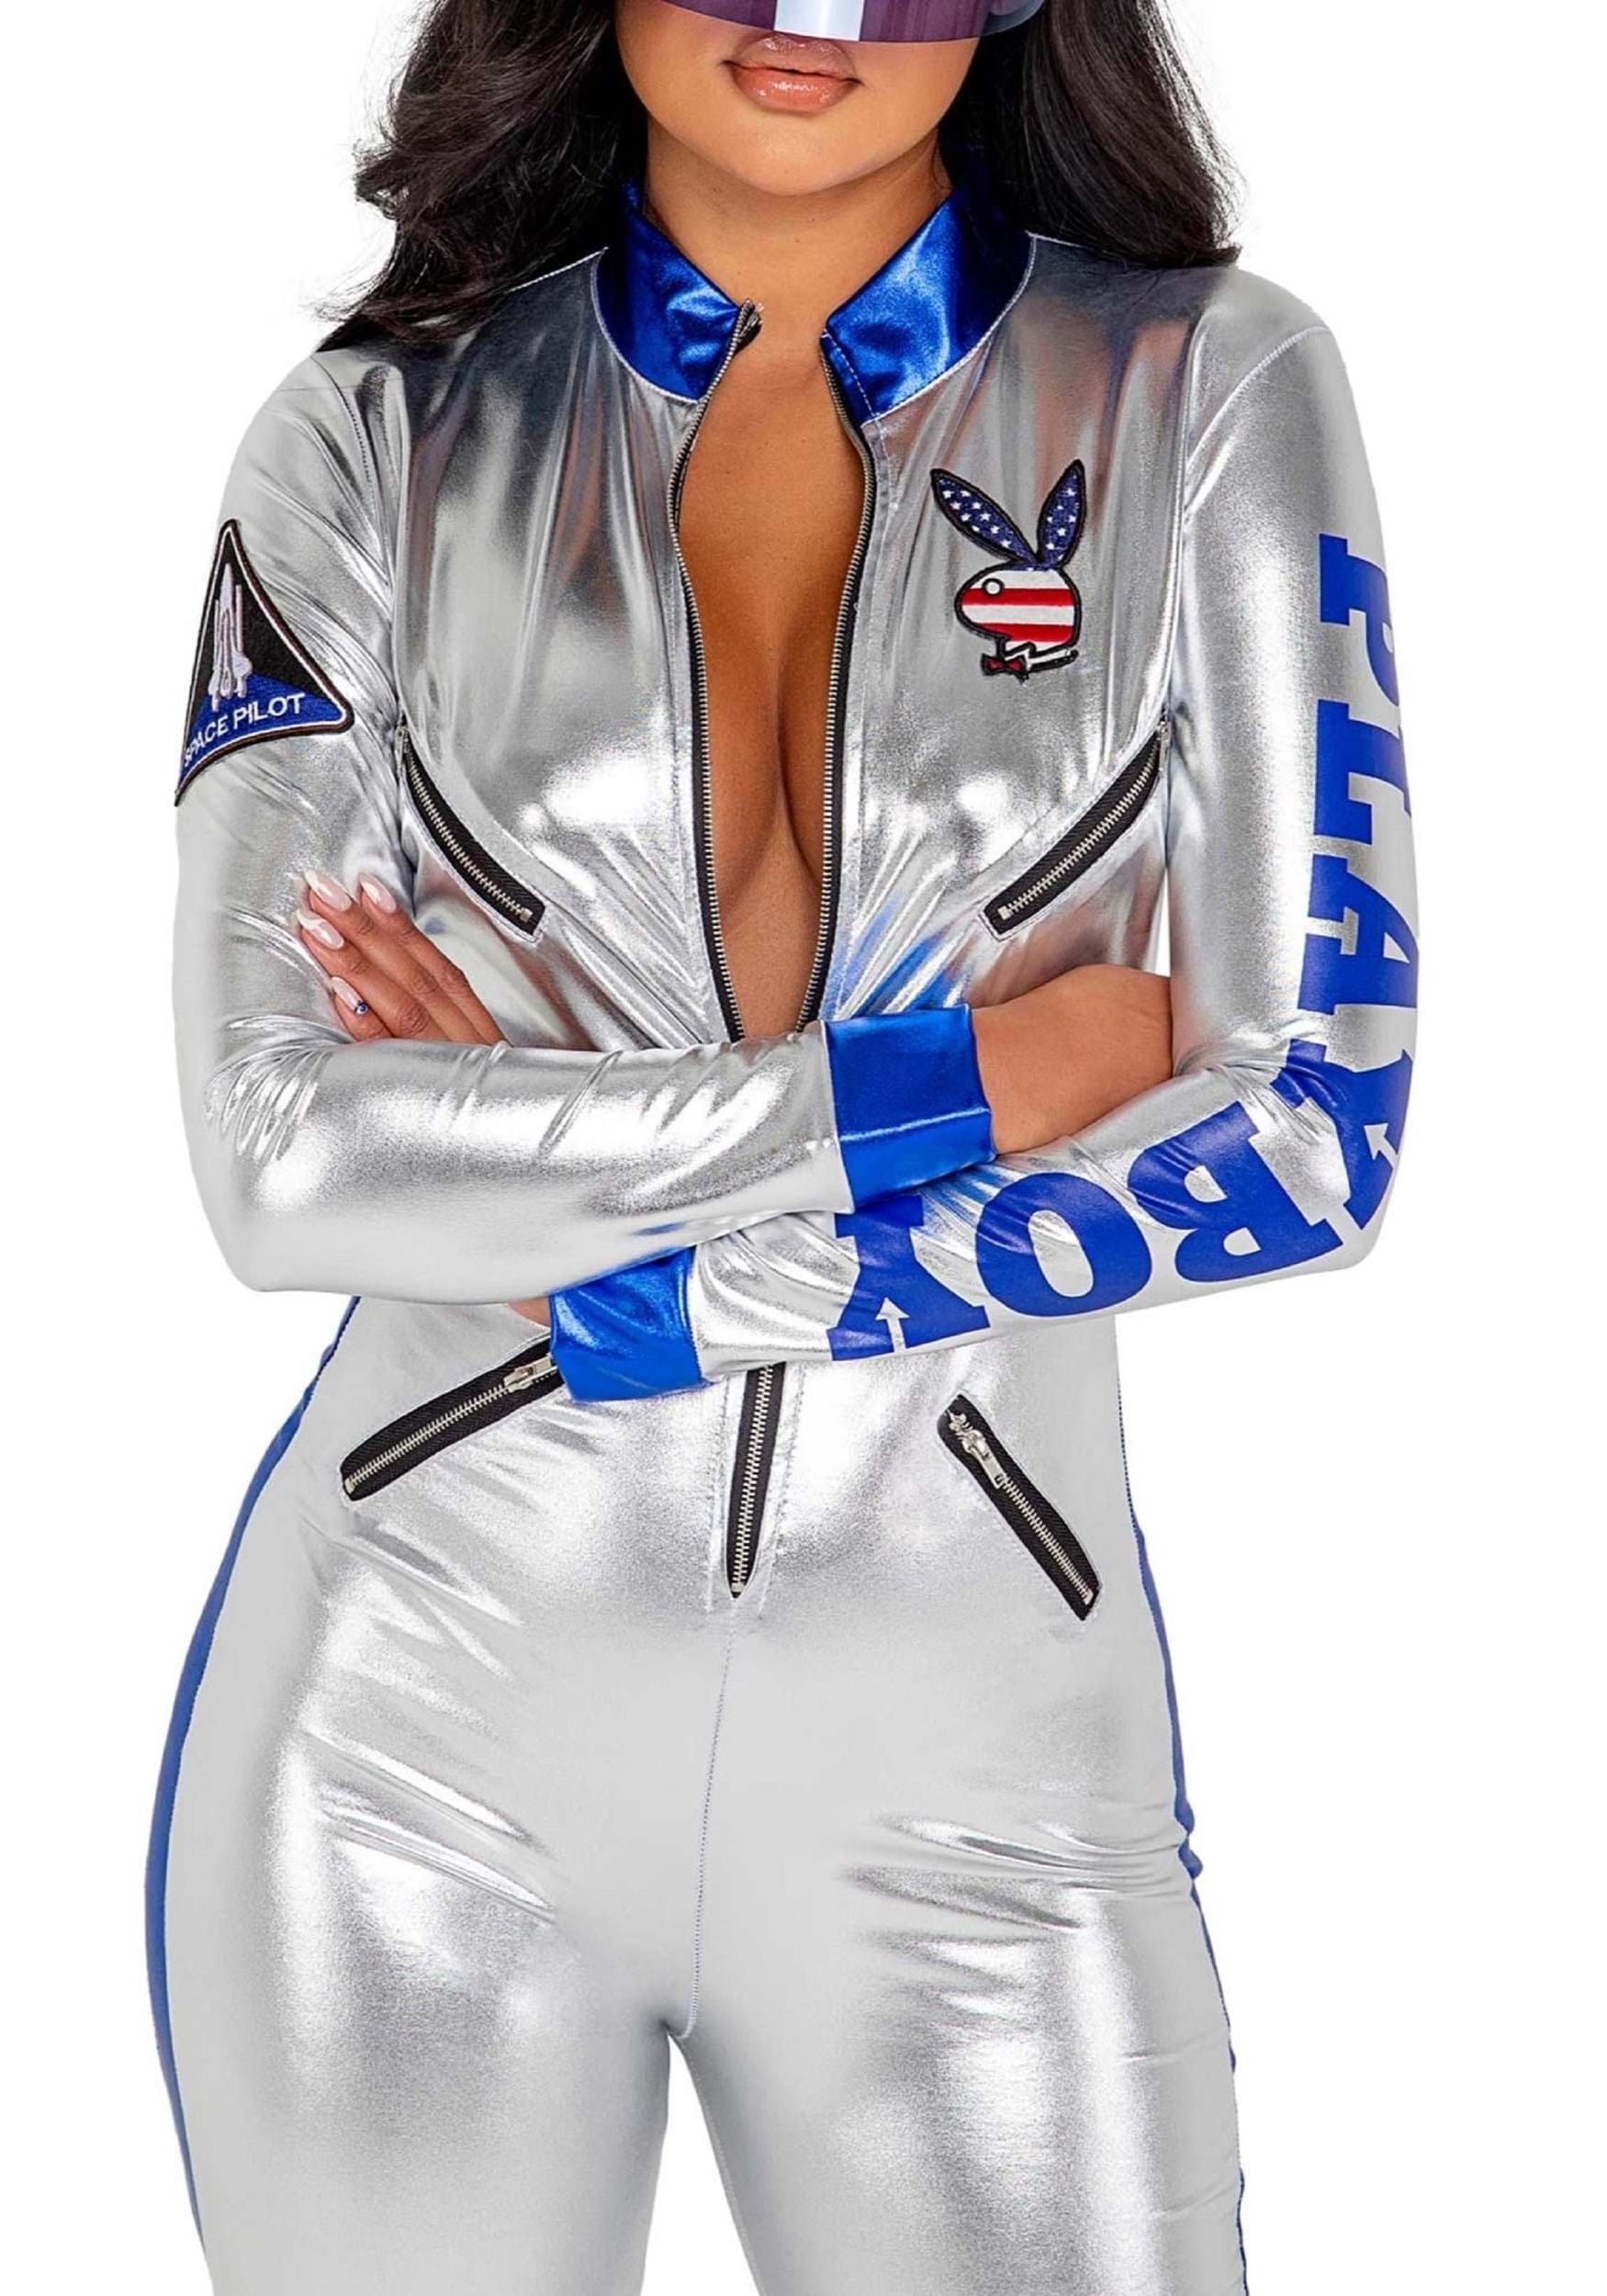 Women's Playboy Sexy Astronaut Fancy Dress Costume , Playboy Fancy Dress Costumes